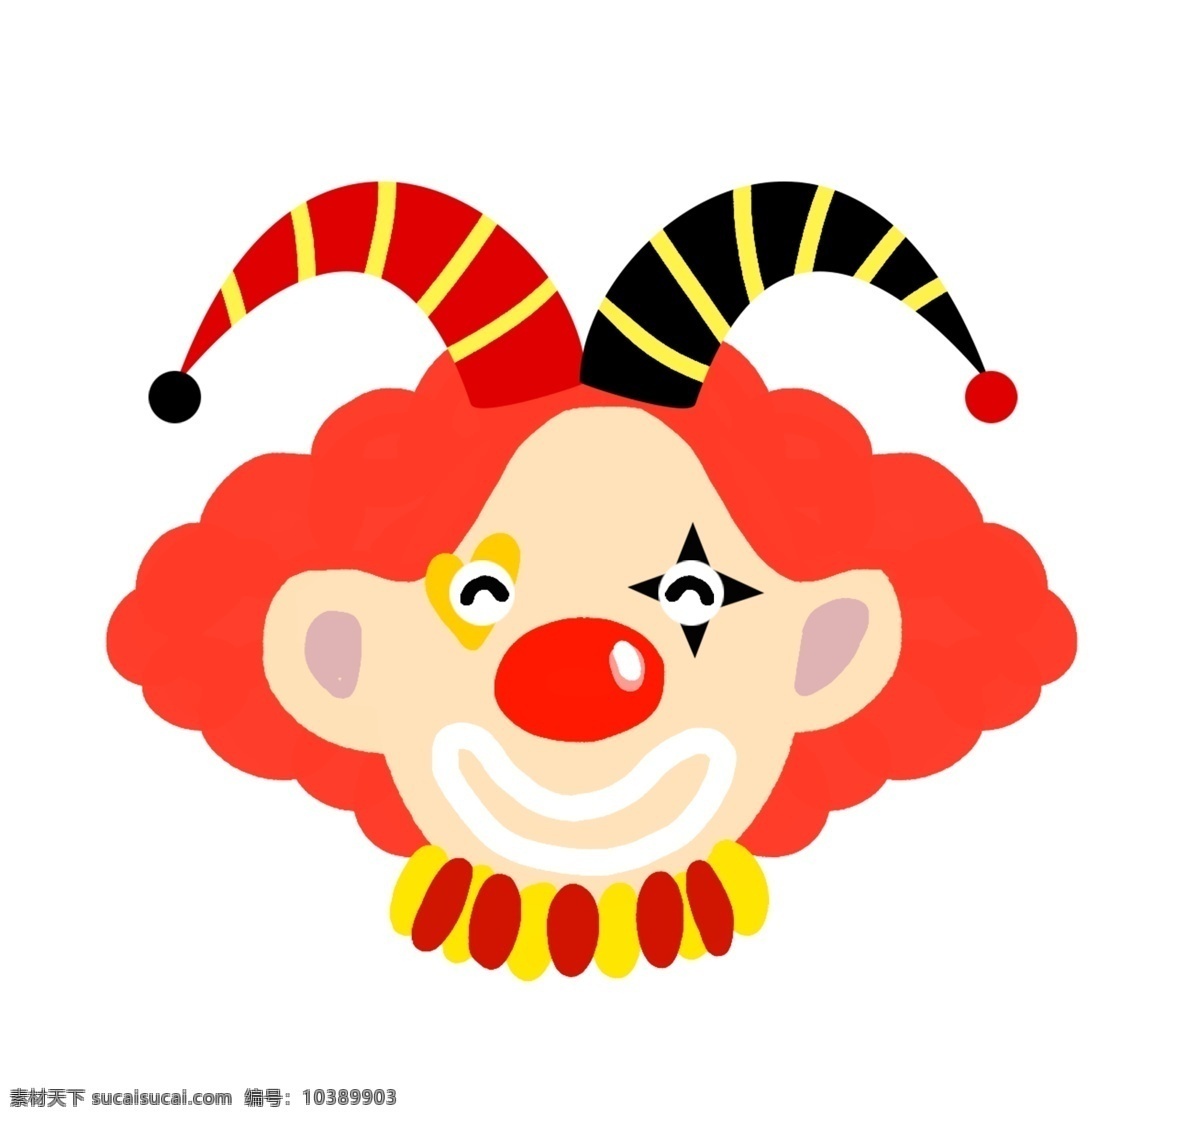 马戏团 红色 小丑 插画 漂亮 手绘 卡通 装饰 可爱